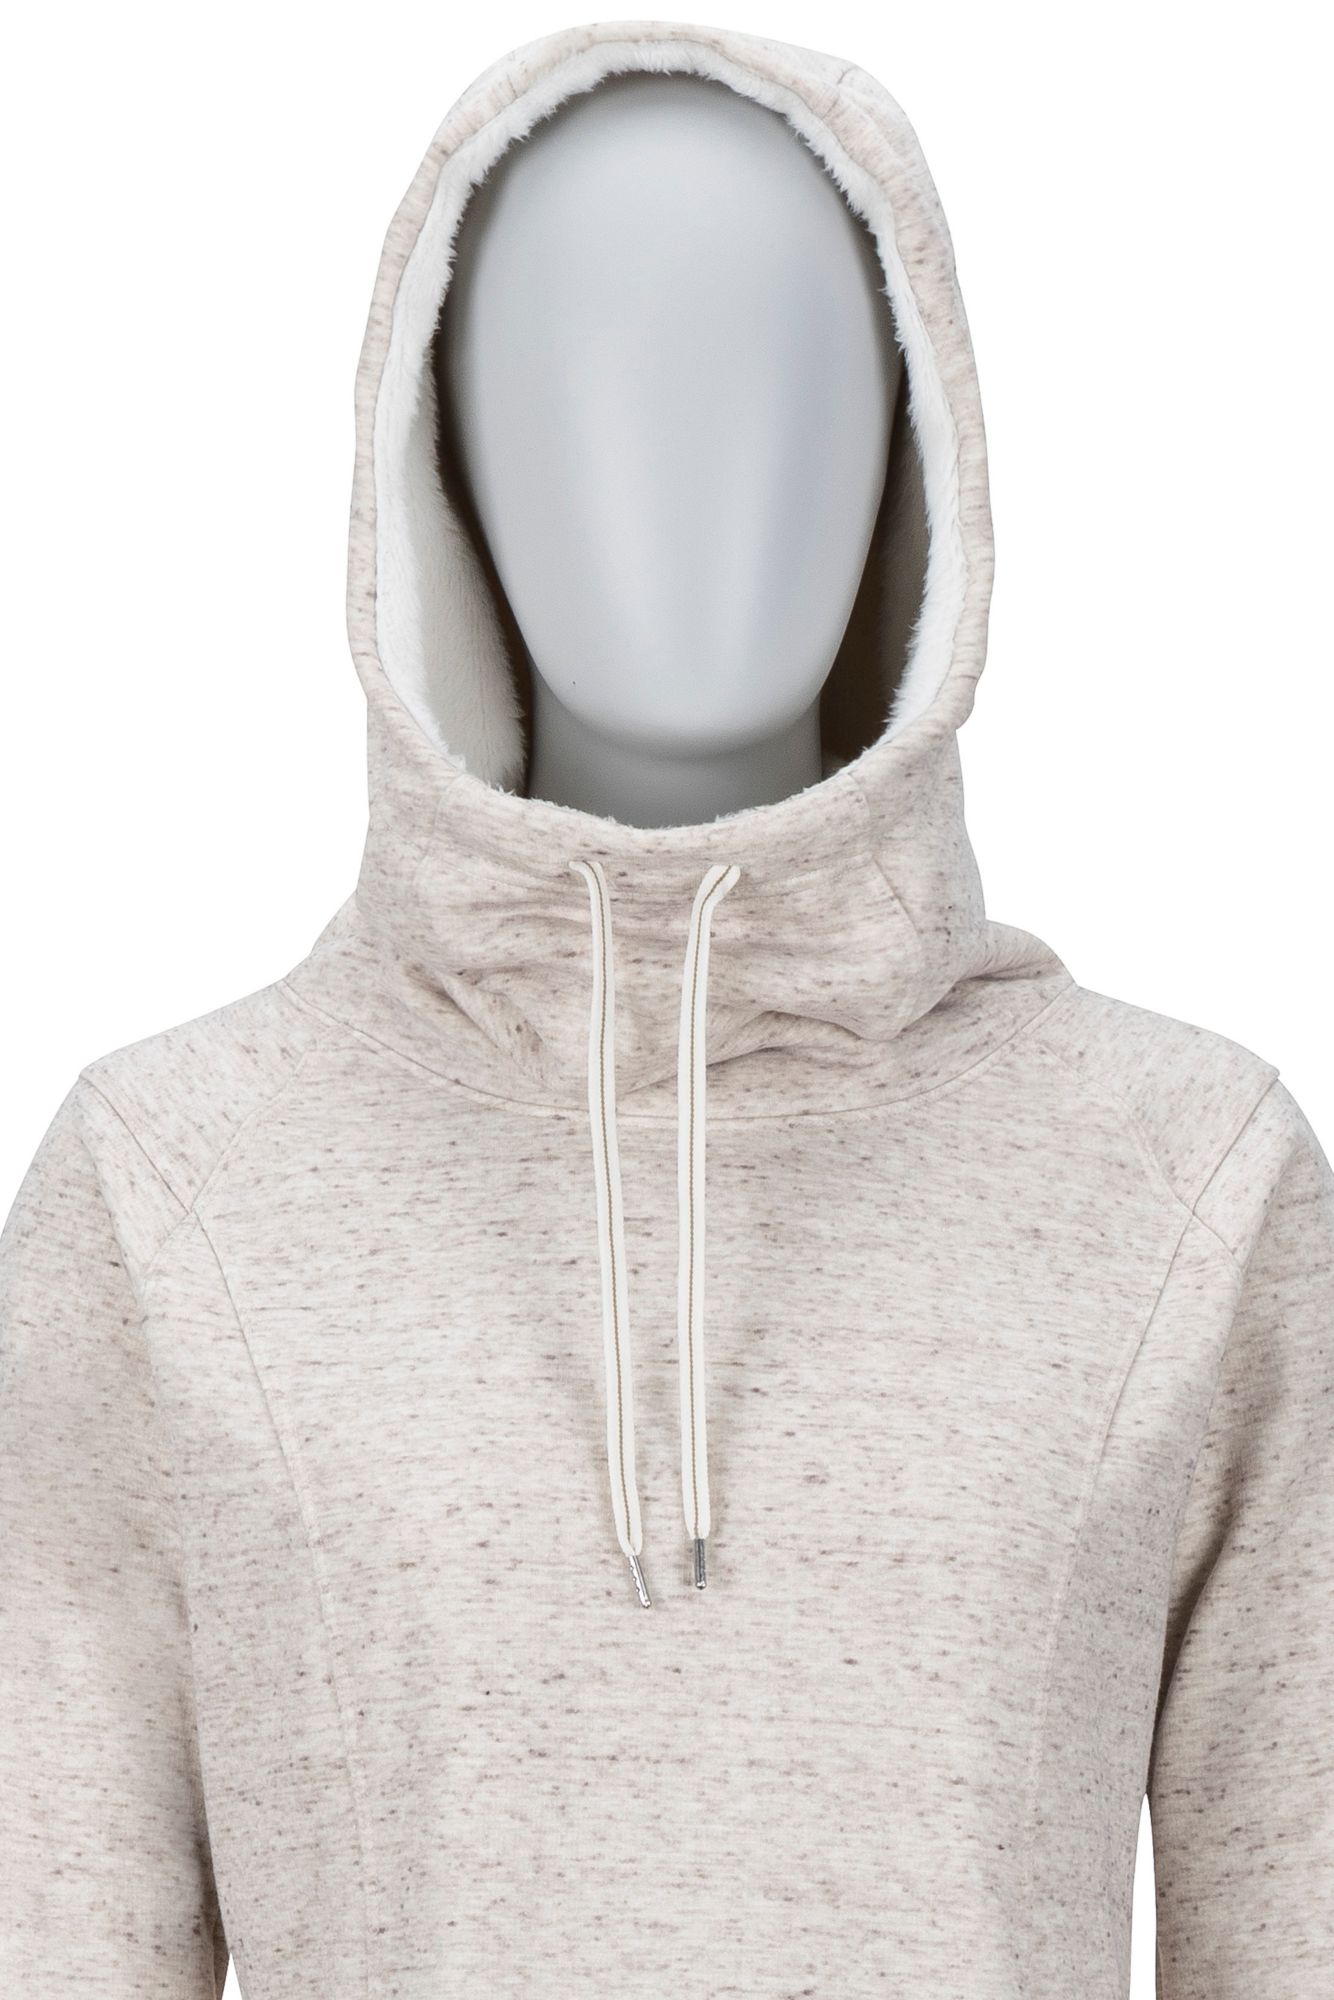 checkered zip up hoodie